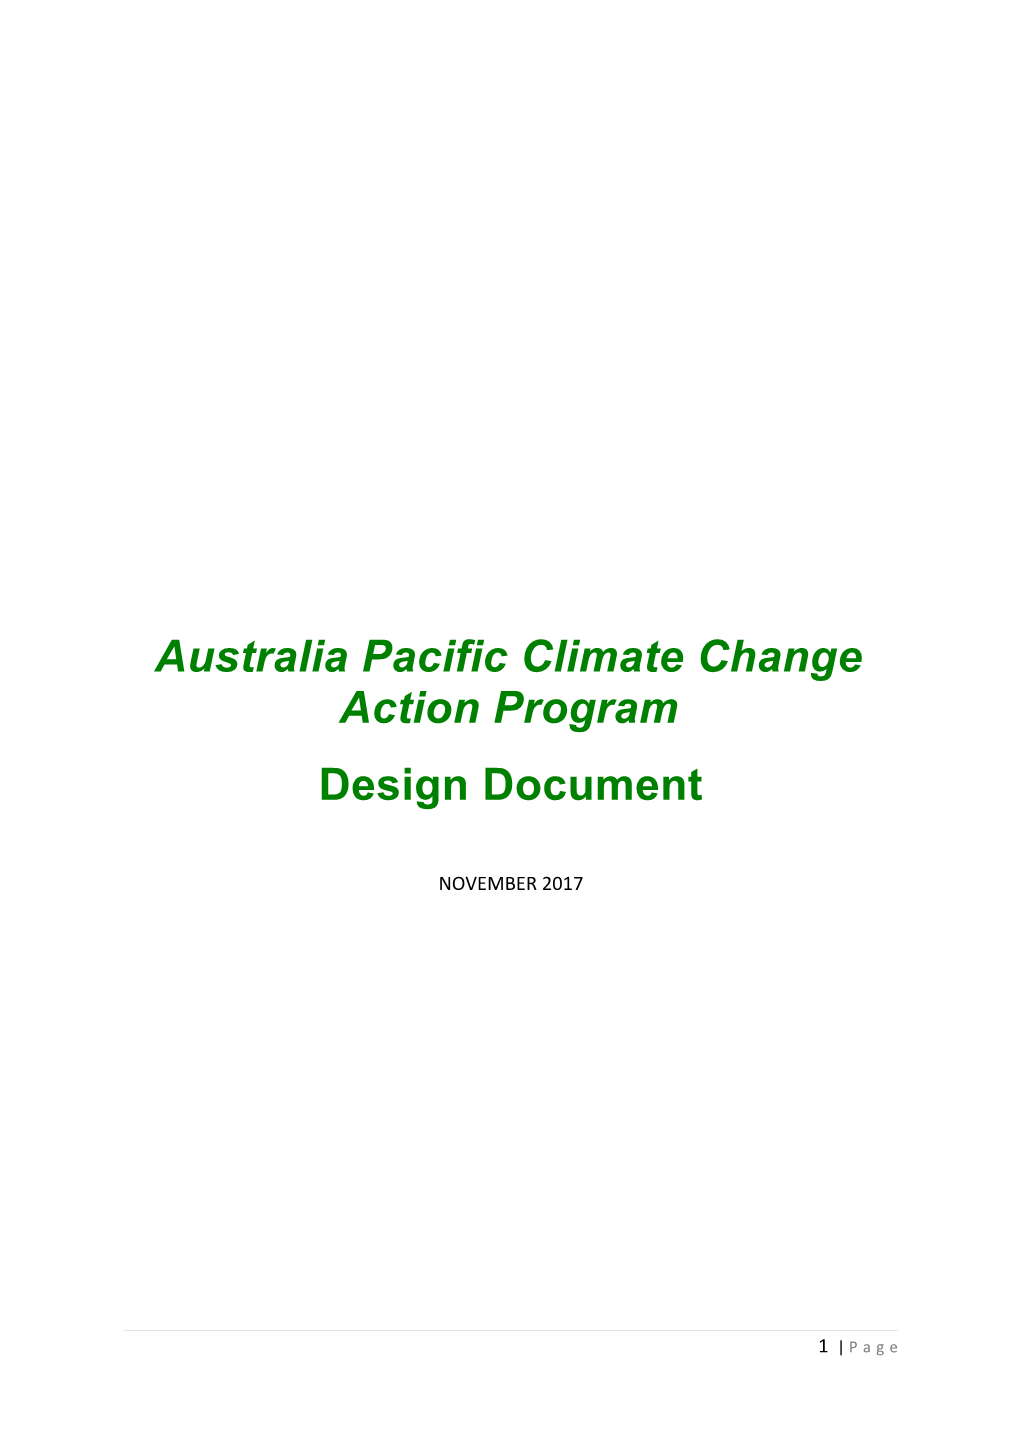 Australia Pacific Climate Change Action Program